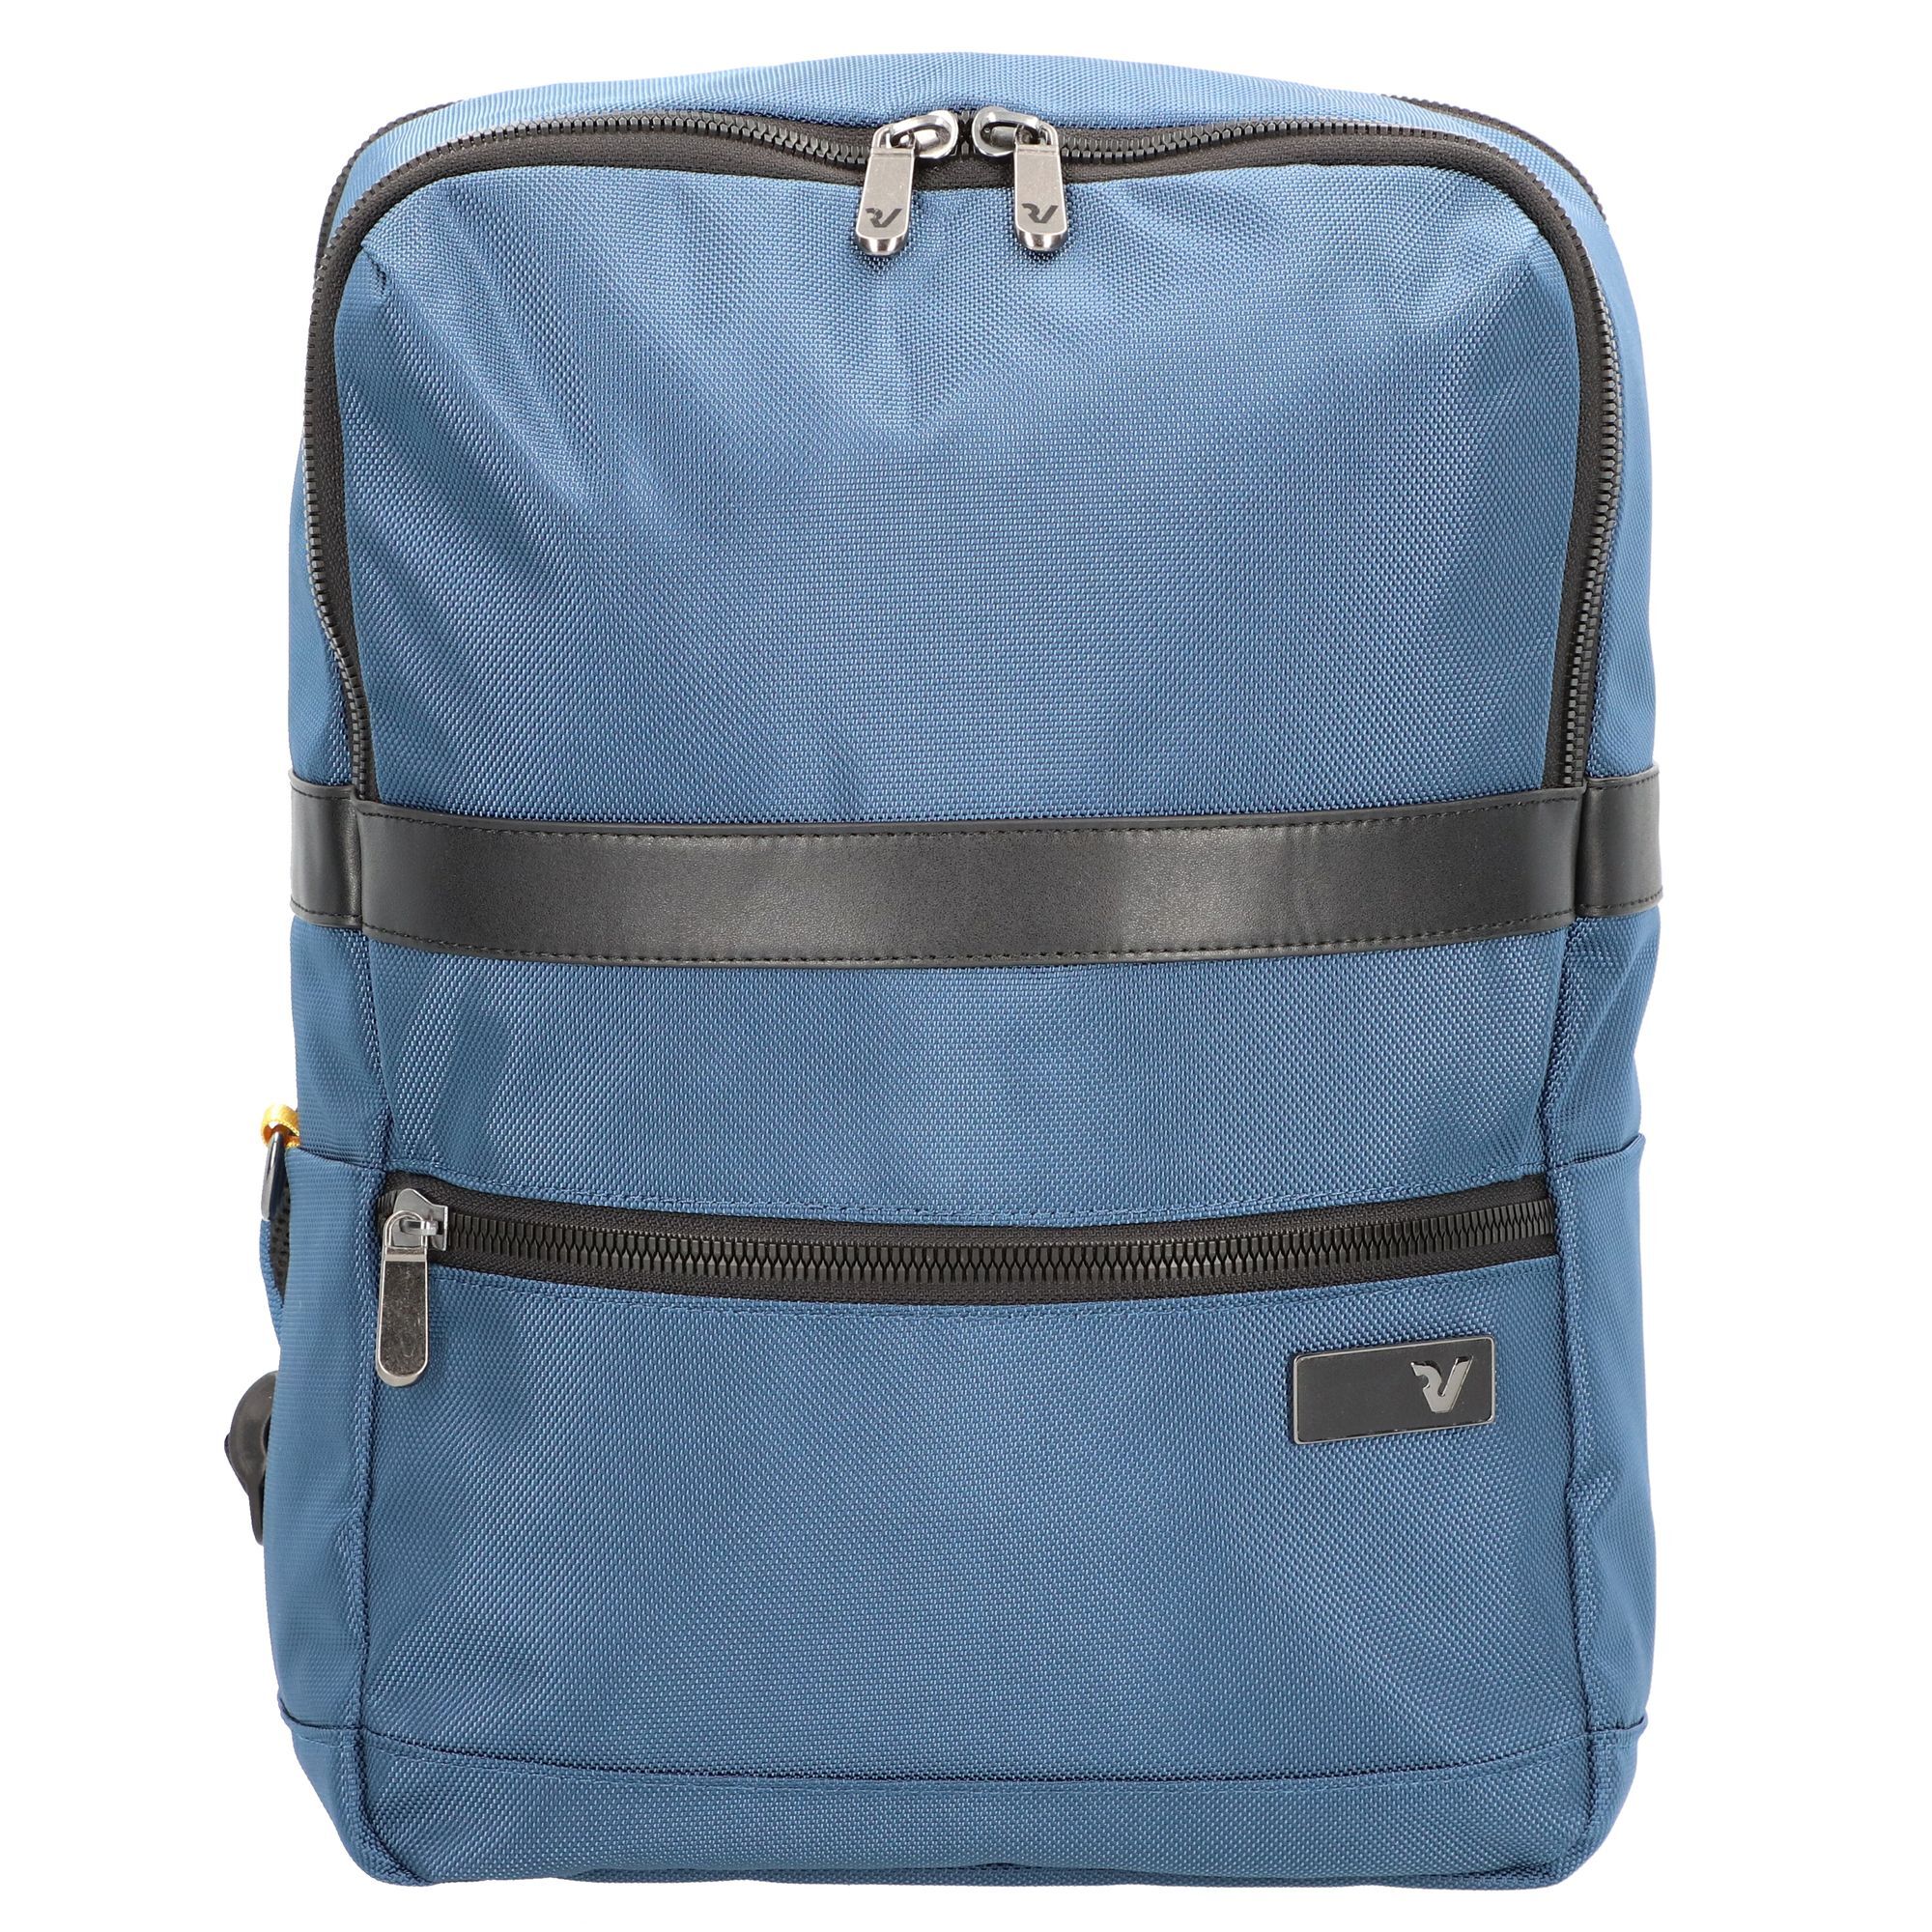 Рюкзак Roncato Rover 41 cm Laptopfach, цвет blu